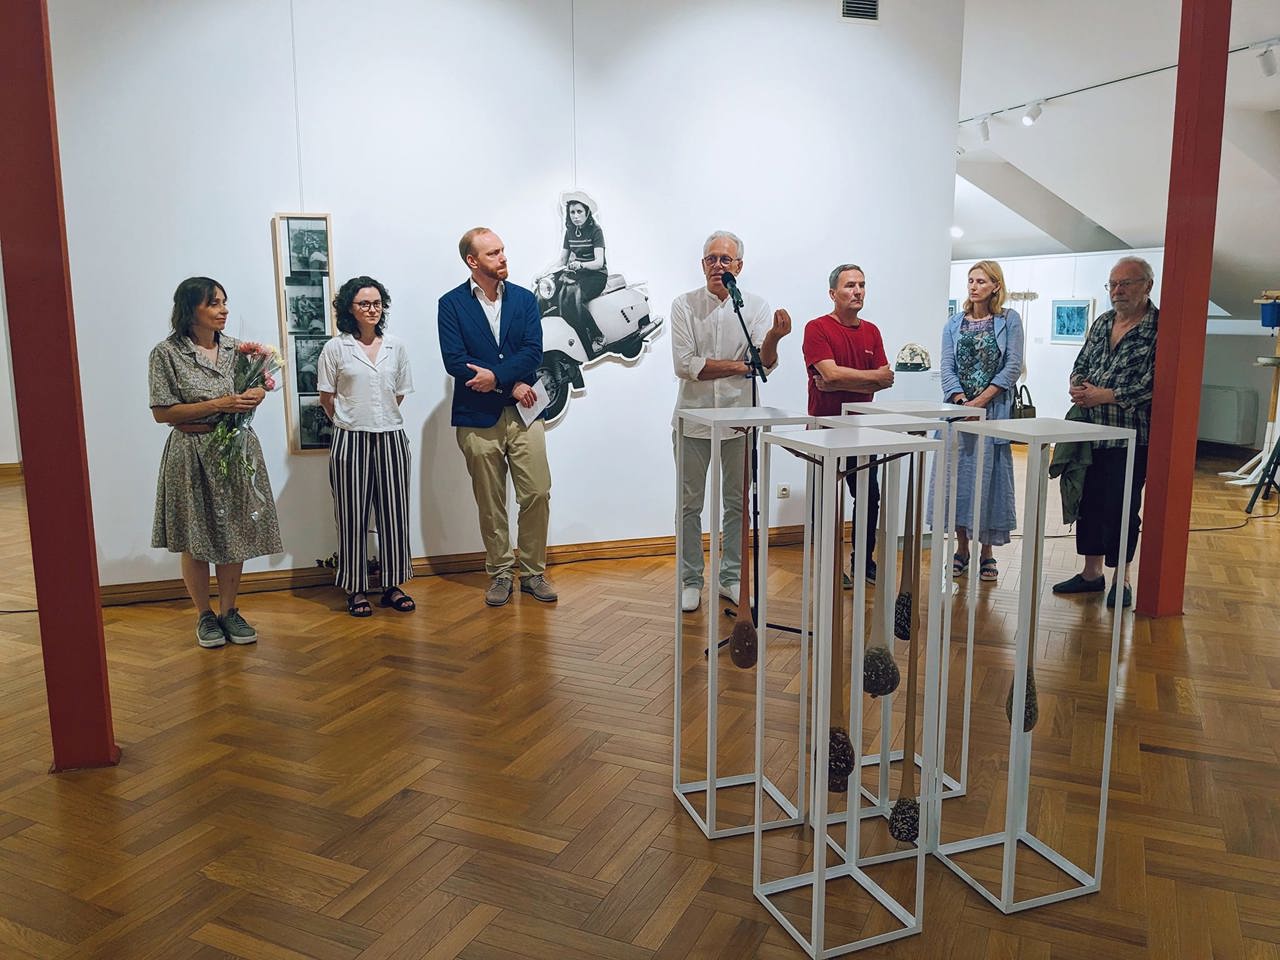 Conexiune între generații în cadrul unei expoziții mai puțin obișnuite inaugurate la Muzeul Național de Artă din capitală